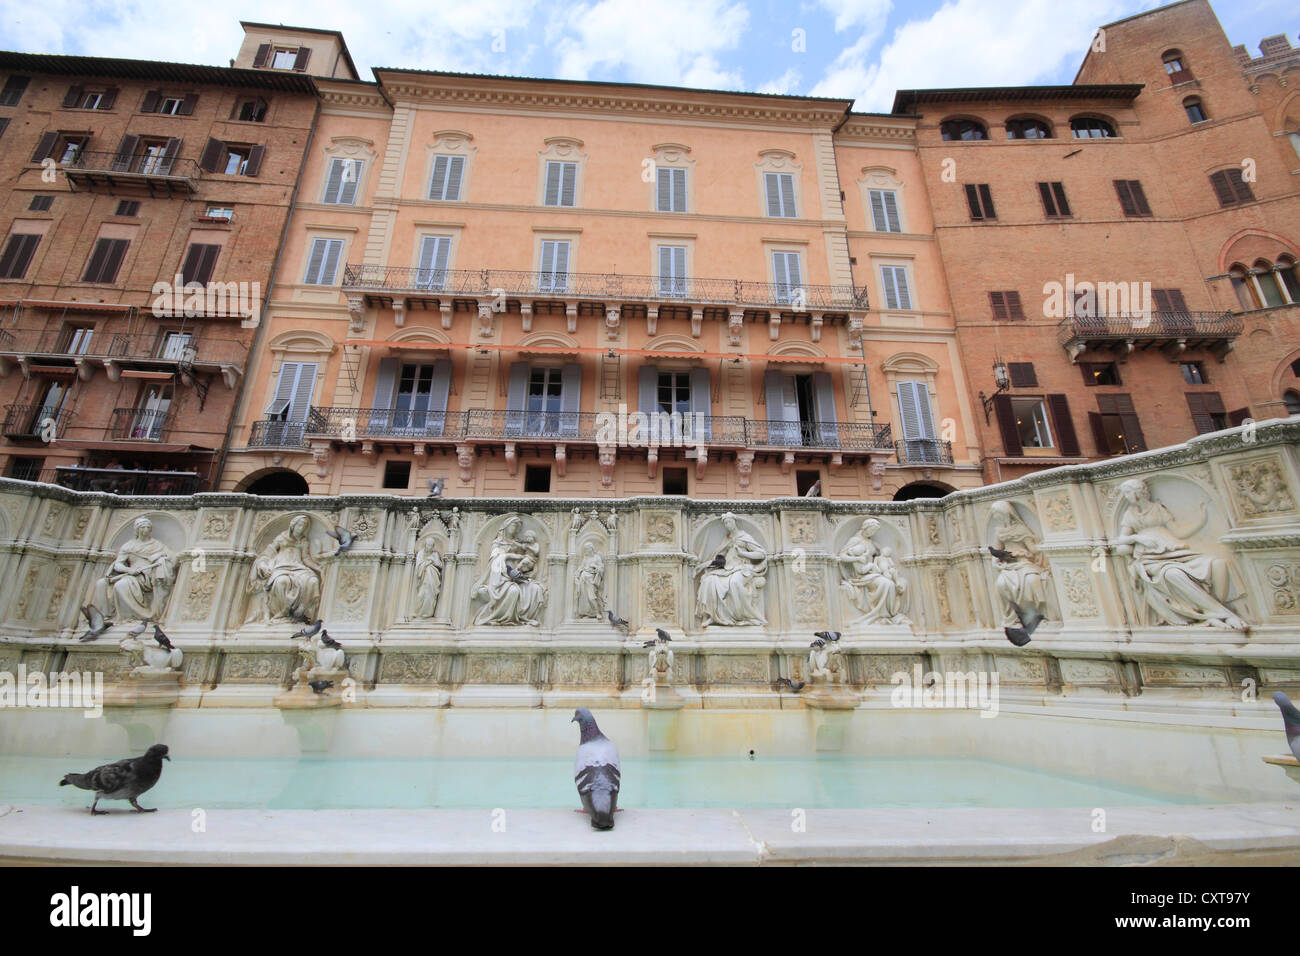 Fonte Gaia fountain, Piazza del Campo square, Siena, Italy, Europe Stock Photo